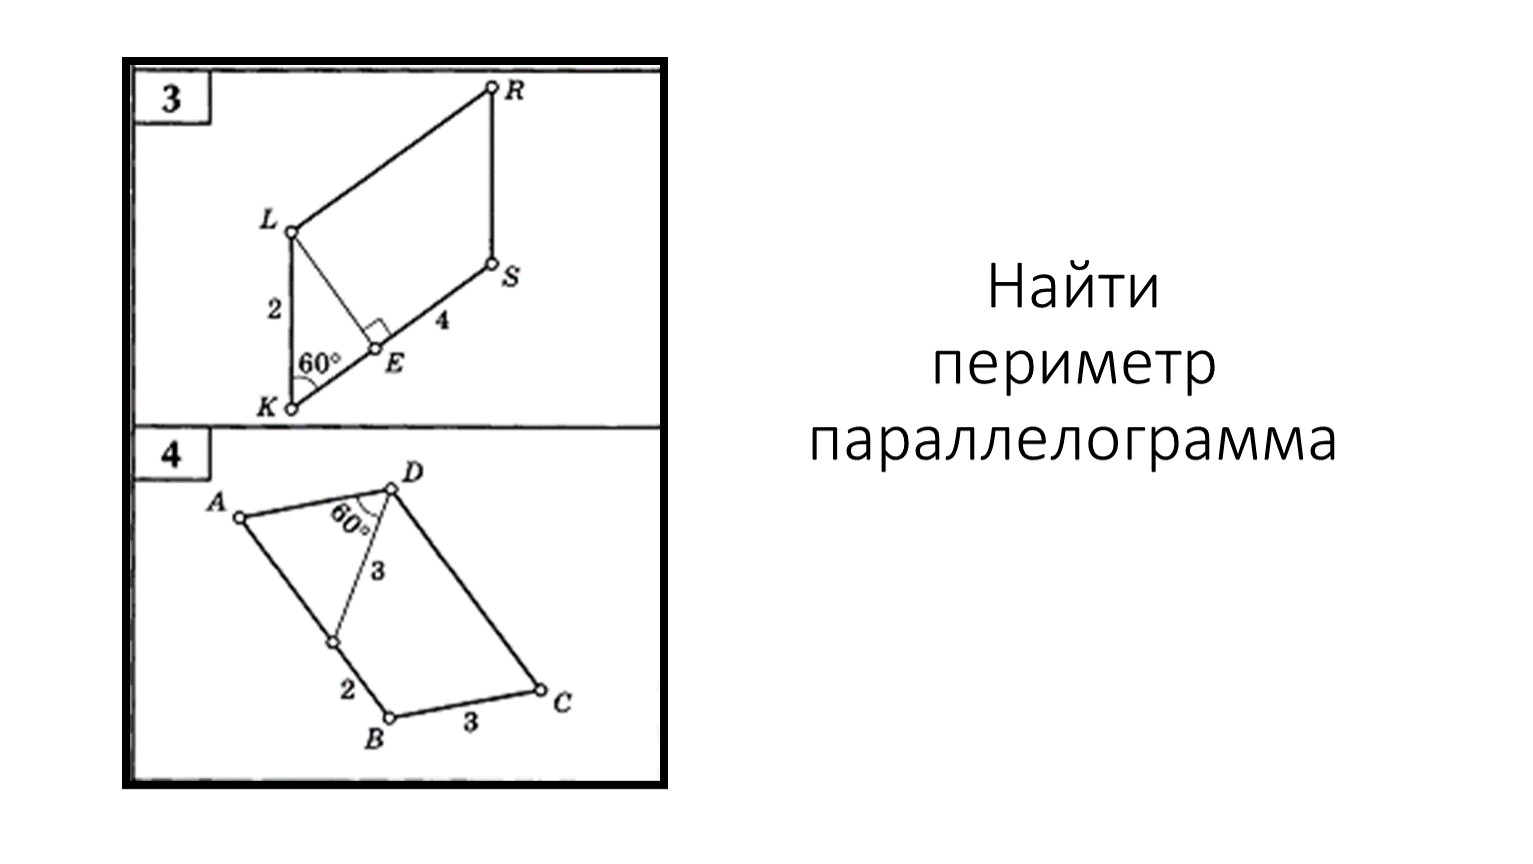 Найдите периметр параллелограмма изображенного на рисунке ан 9